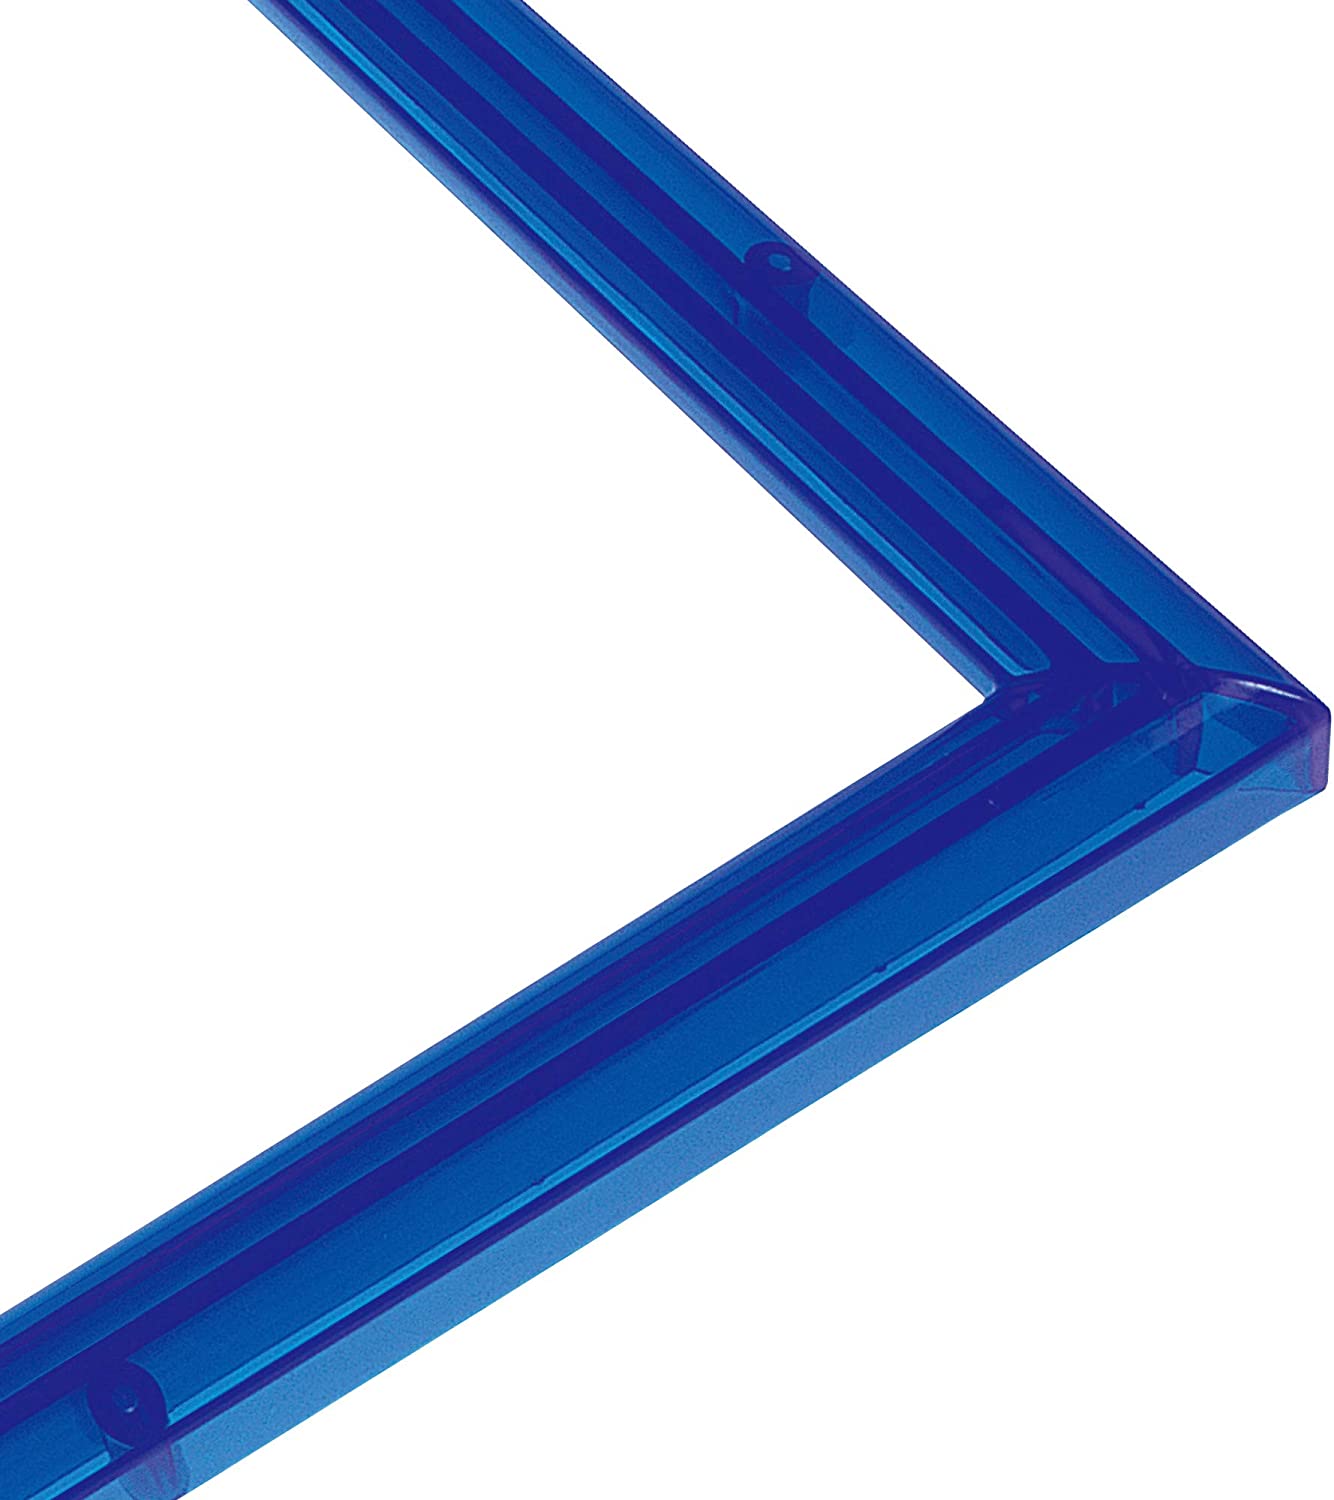 エポック社 パズルフレーム クリスタルパネル ブルー (38x53cm)(パネルNo.5-B)